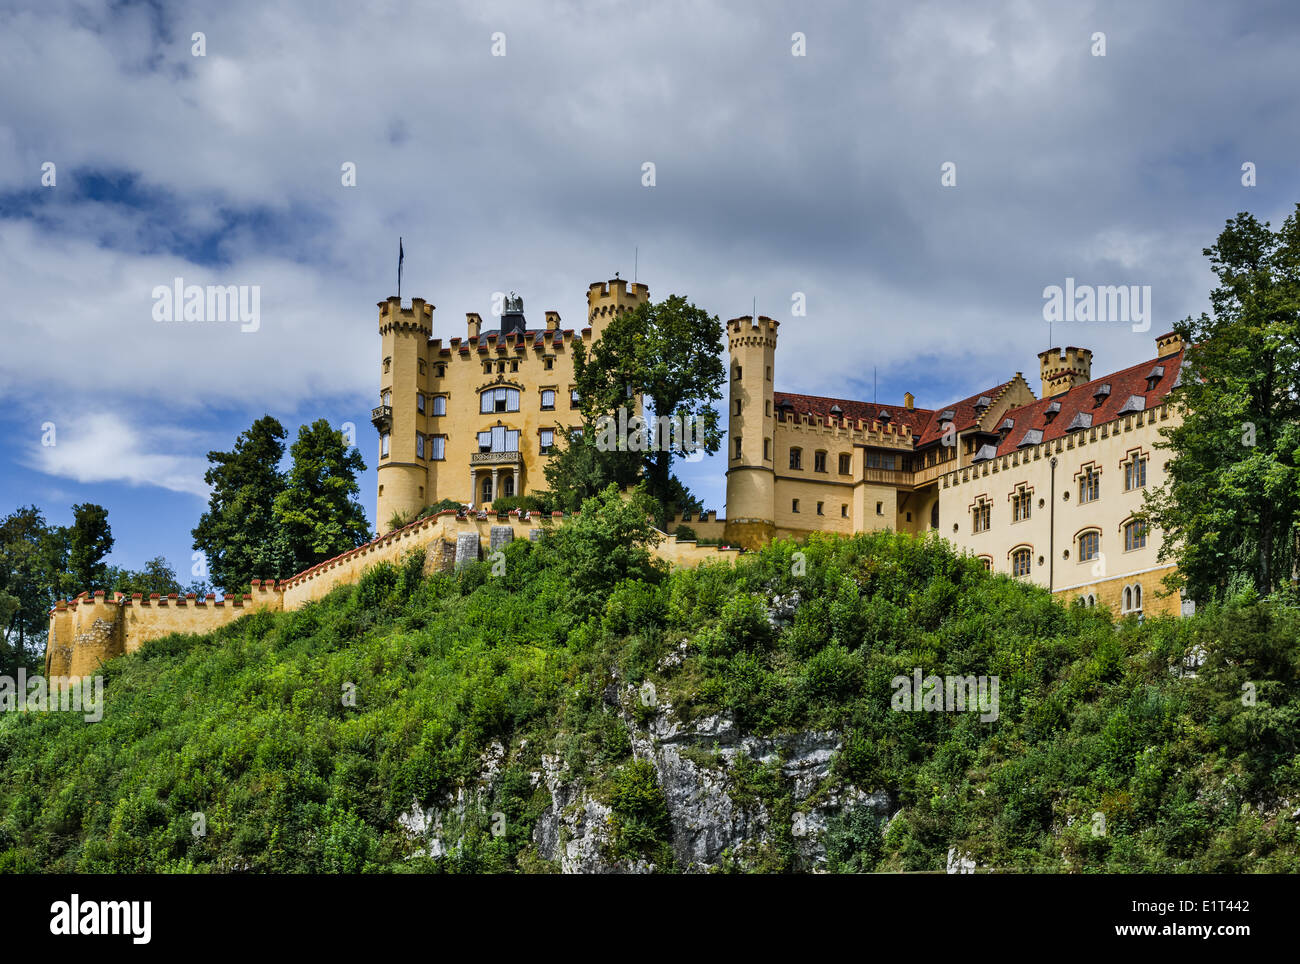 La Bavière, Allemagne. Schloss Hohenschwangau, palais du 19e siècle dans le sud de l'Allemagne Banque D'Images